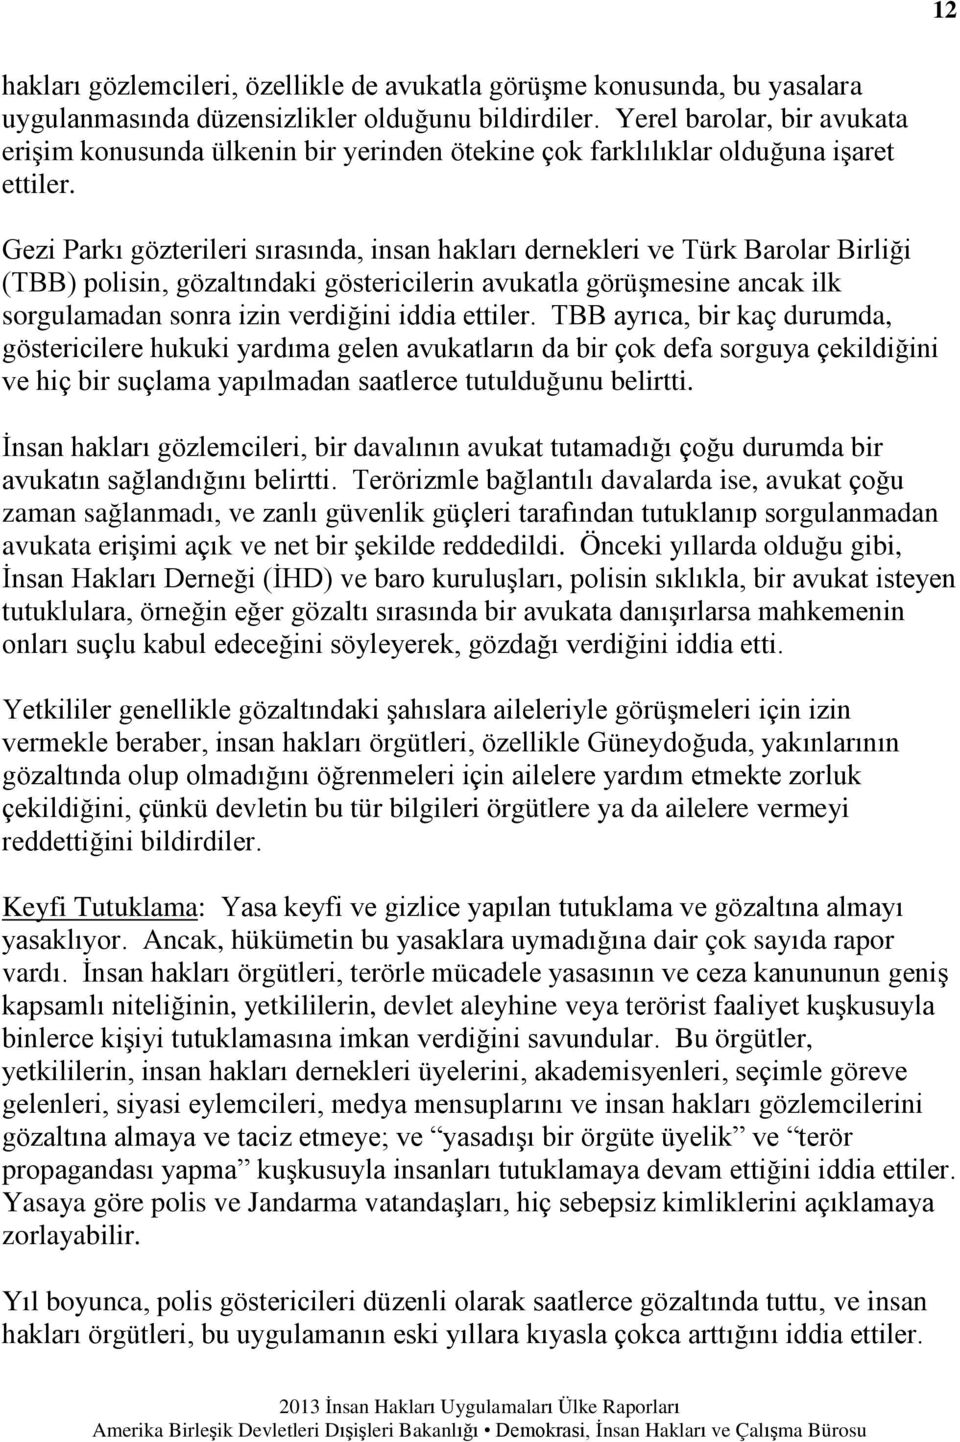 Gezi Parkı gözterileri sırasında, insan hakları dernekleri ve Türk Barolar Birliği (TBB) polisin, gözaltındaki göstericilerin avukatla görüşmesine ancak ilk sorgulamadan sonra izin verdiğini iddia